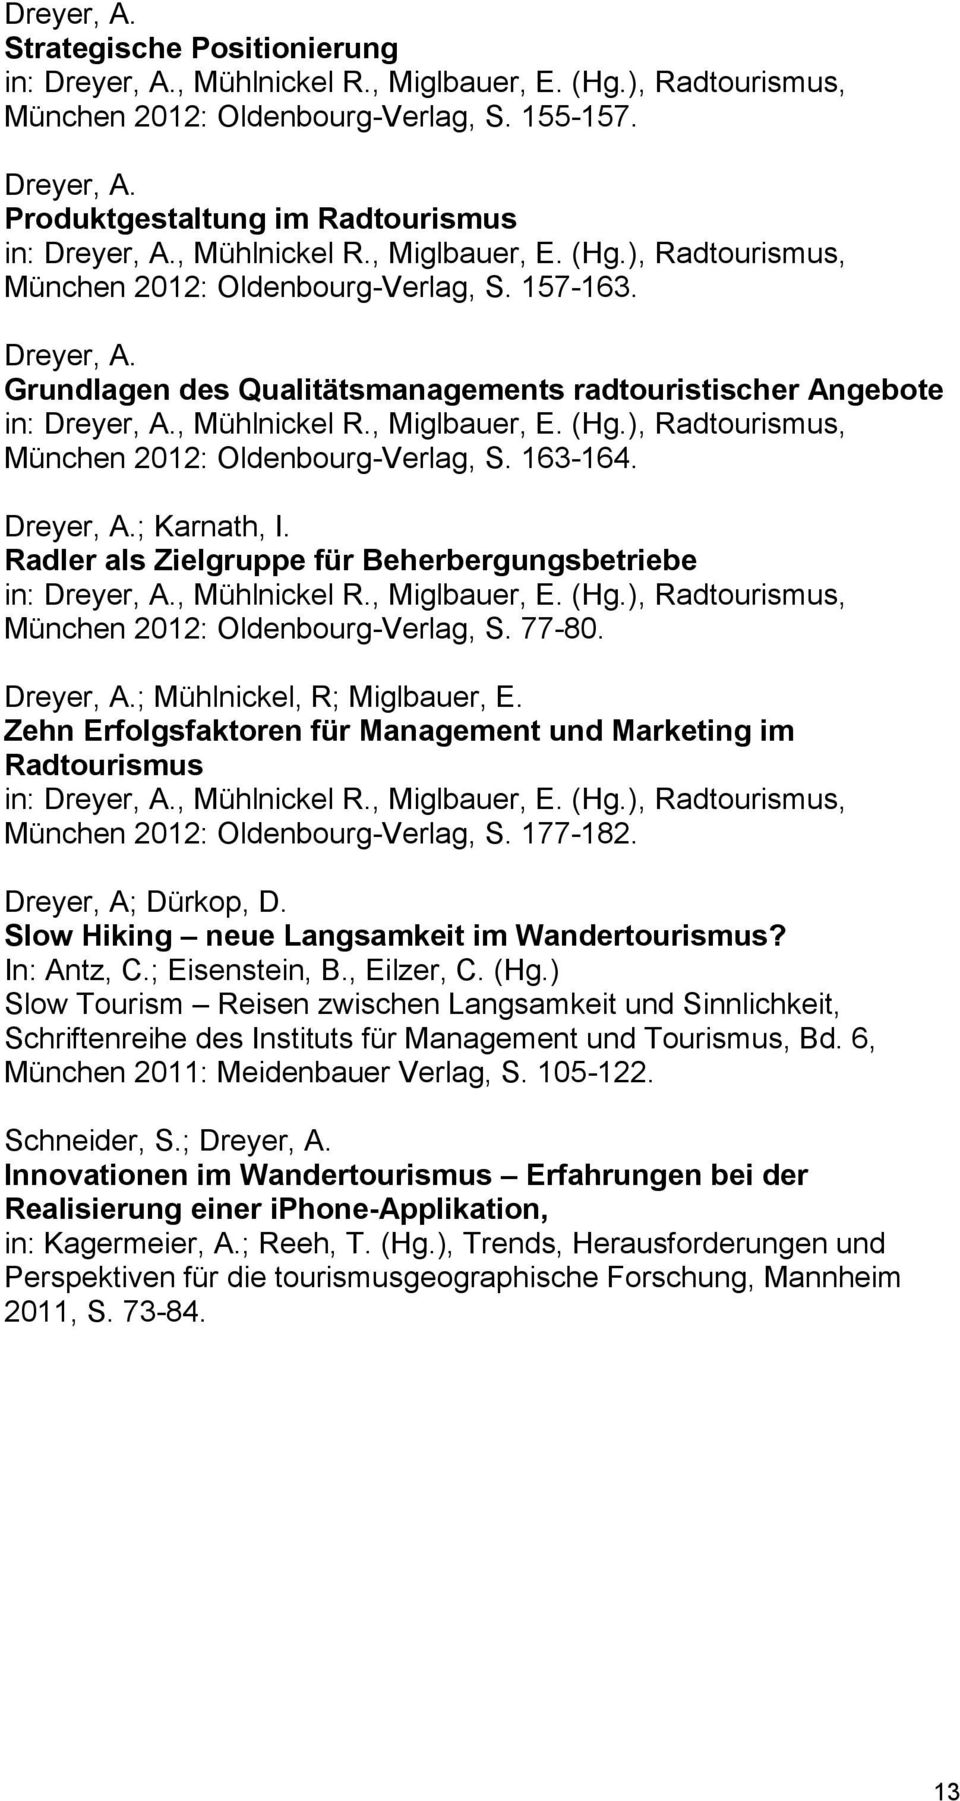 Radler als Zielgruppe für Beherbergungsbetriebe in:, Mühlnickel R., Miglbauer, E. (Hg.), Radtourismus, München 2012: Oldenbourg-Verlag, S. 77-80. ; Mühlnickel, R; Miglbauer, E.